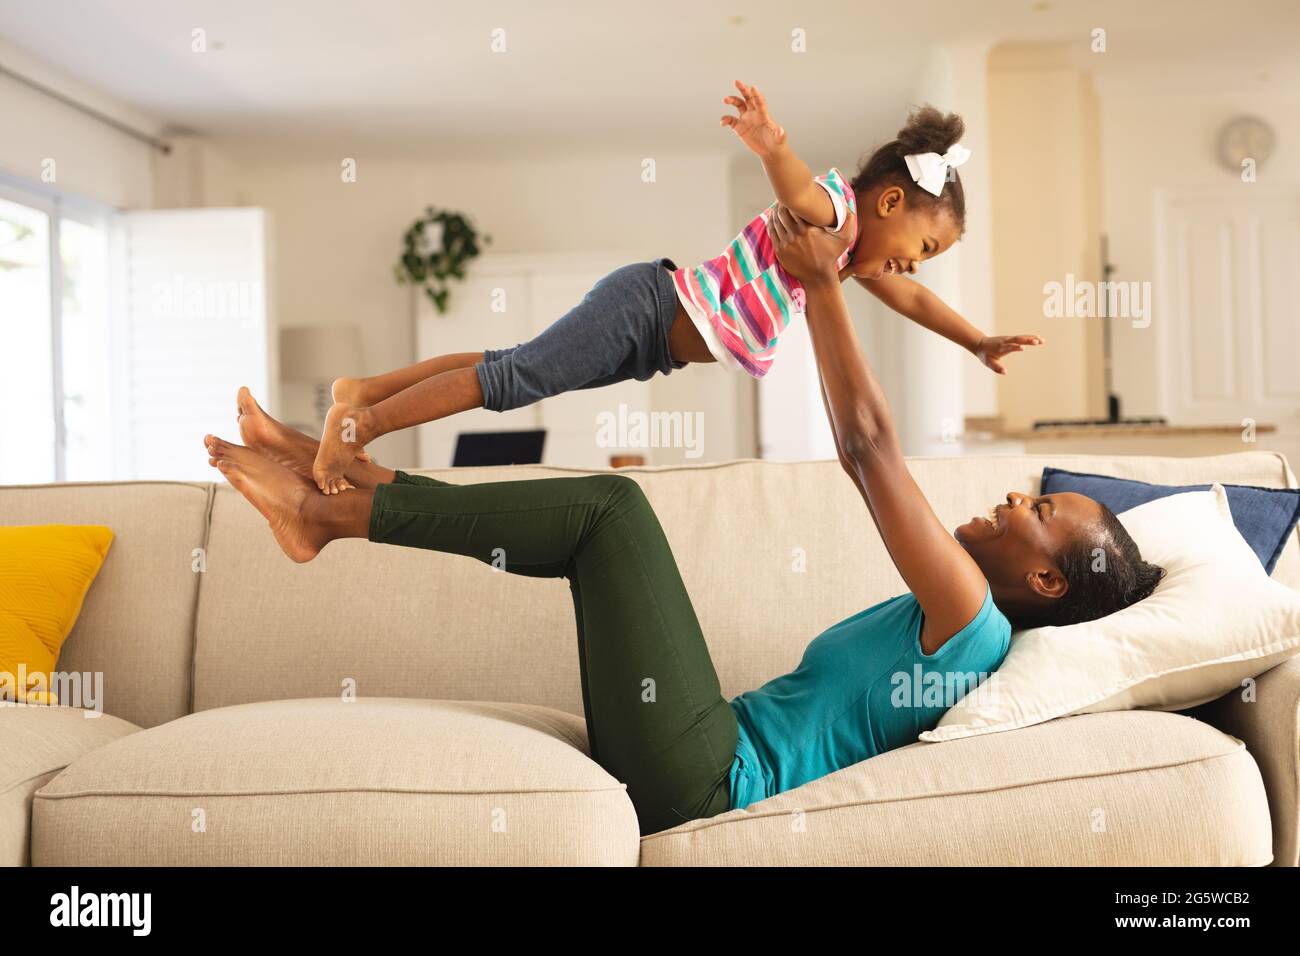 Glückliche afroamerikanische Mutter, die auf der Couch liegt und Spaß hat, lächelnde Tochter über ihr zu balancieren Stockfoto